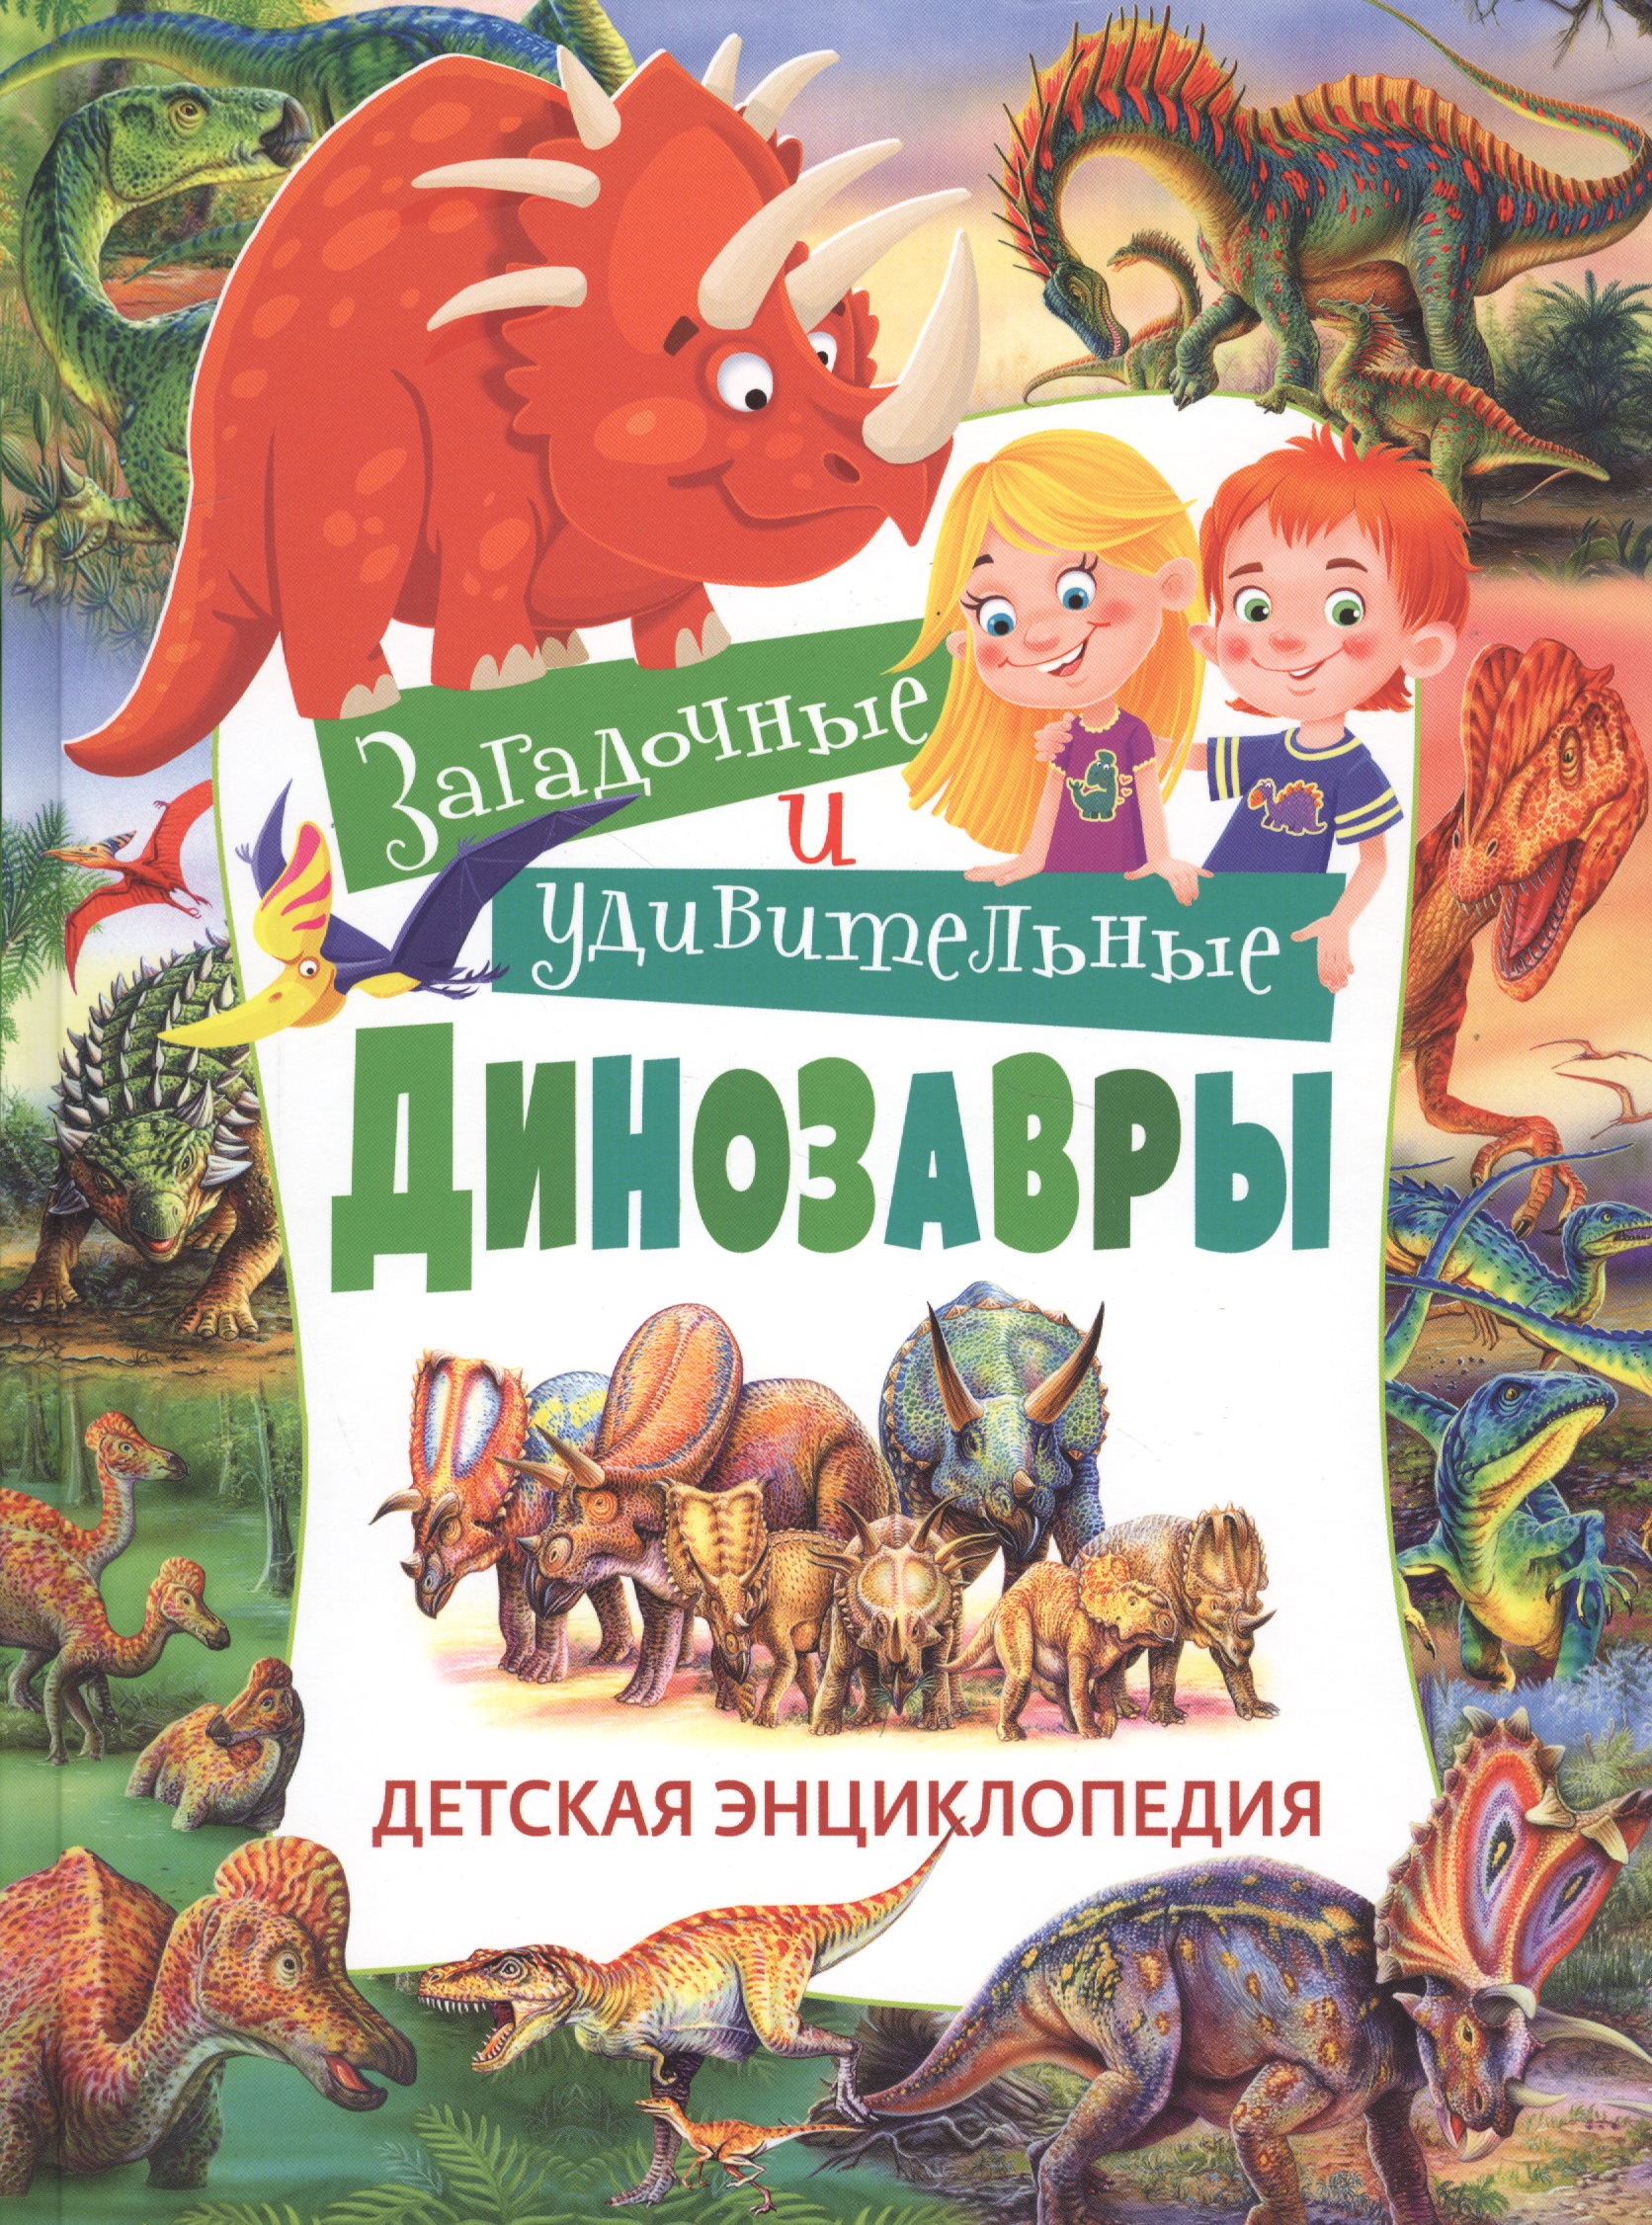 Арредондо Франциско Загадочные и удивительные динозавры. Детская энциклопедия